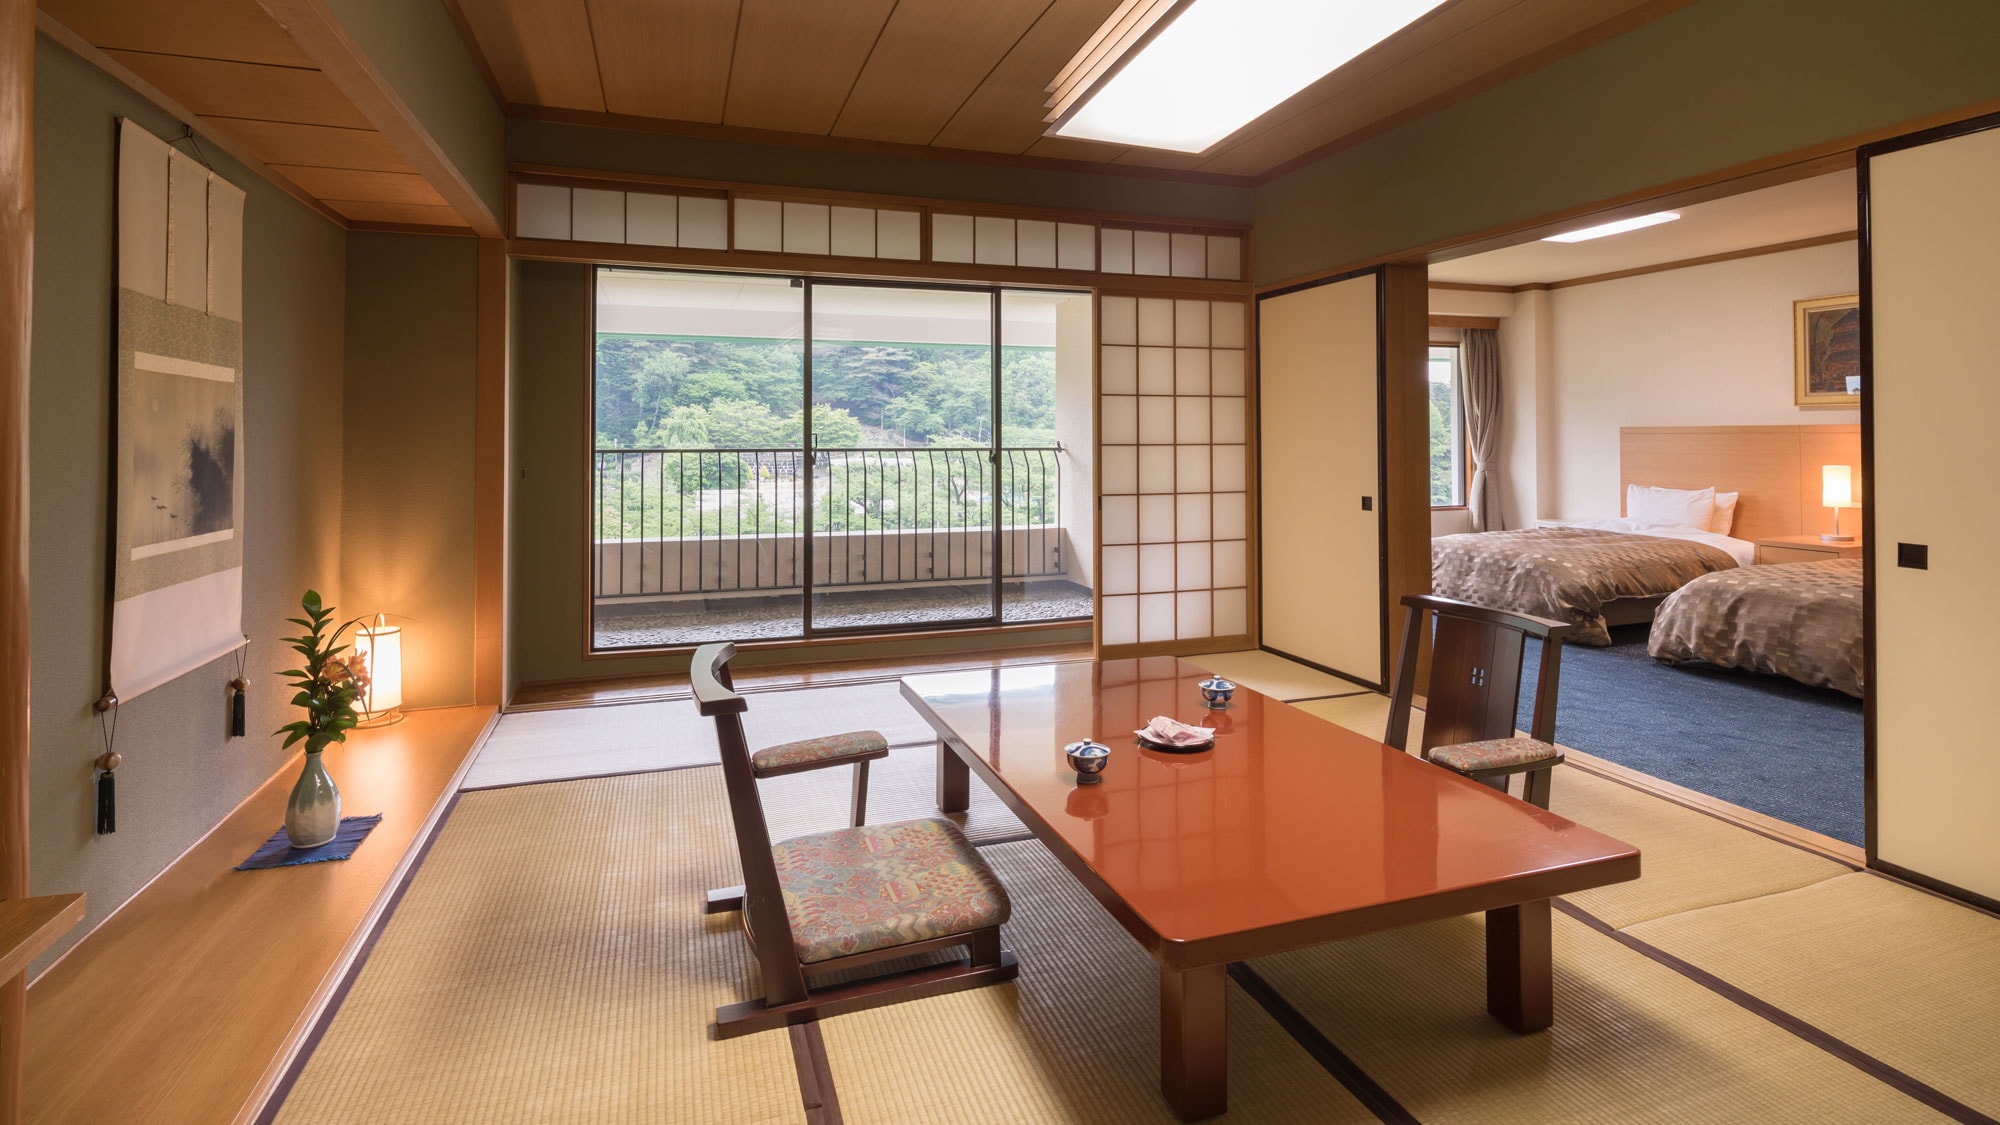 【日西式房间】日式房间12张榻榻米+双床房